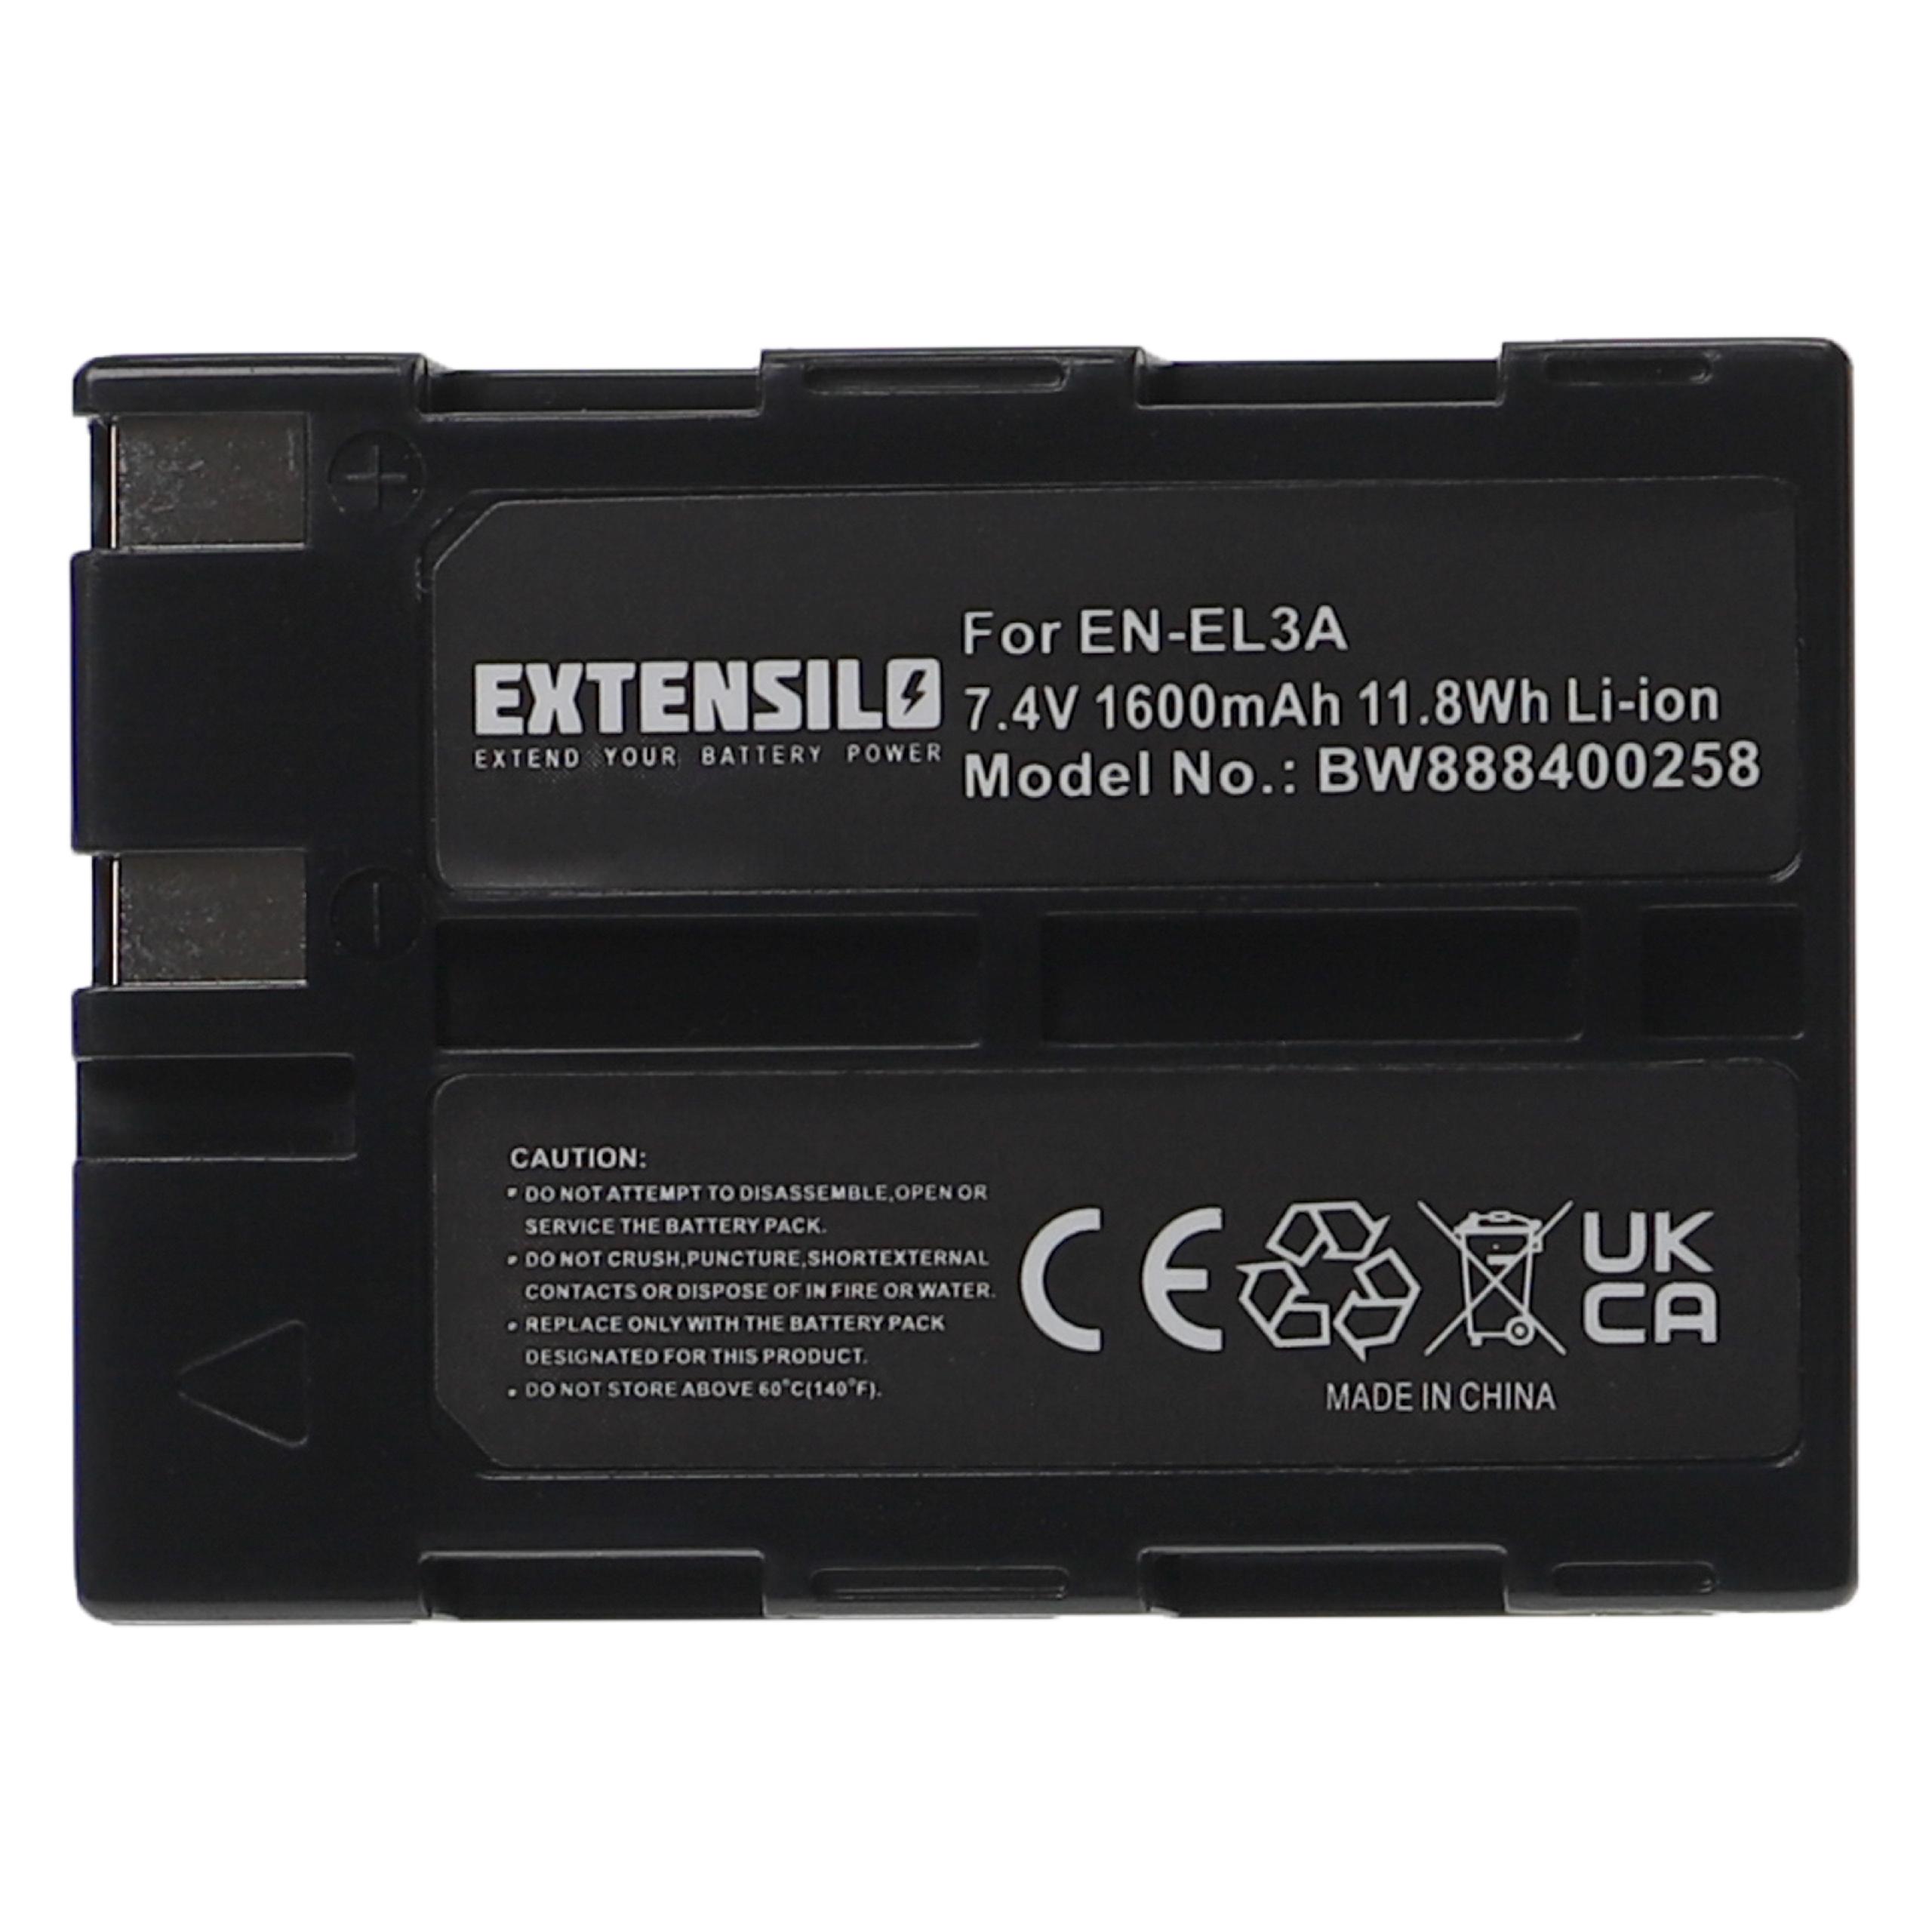 Battery Replacement for Nikon EN-EL3, EN-EL3a - 1600mAh, 7.4V, Li-Ion